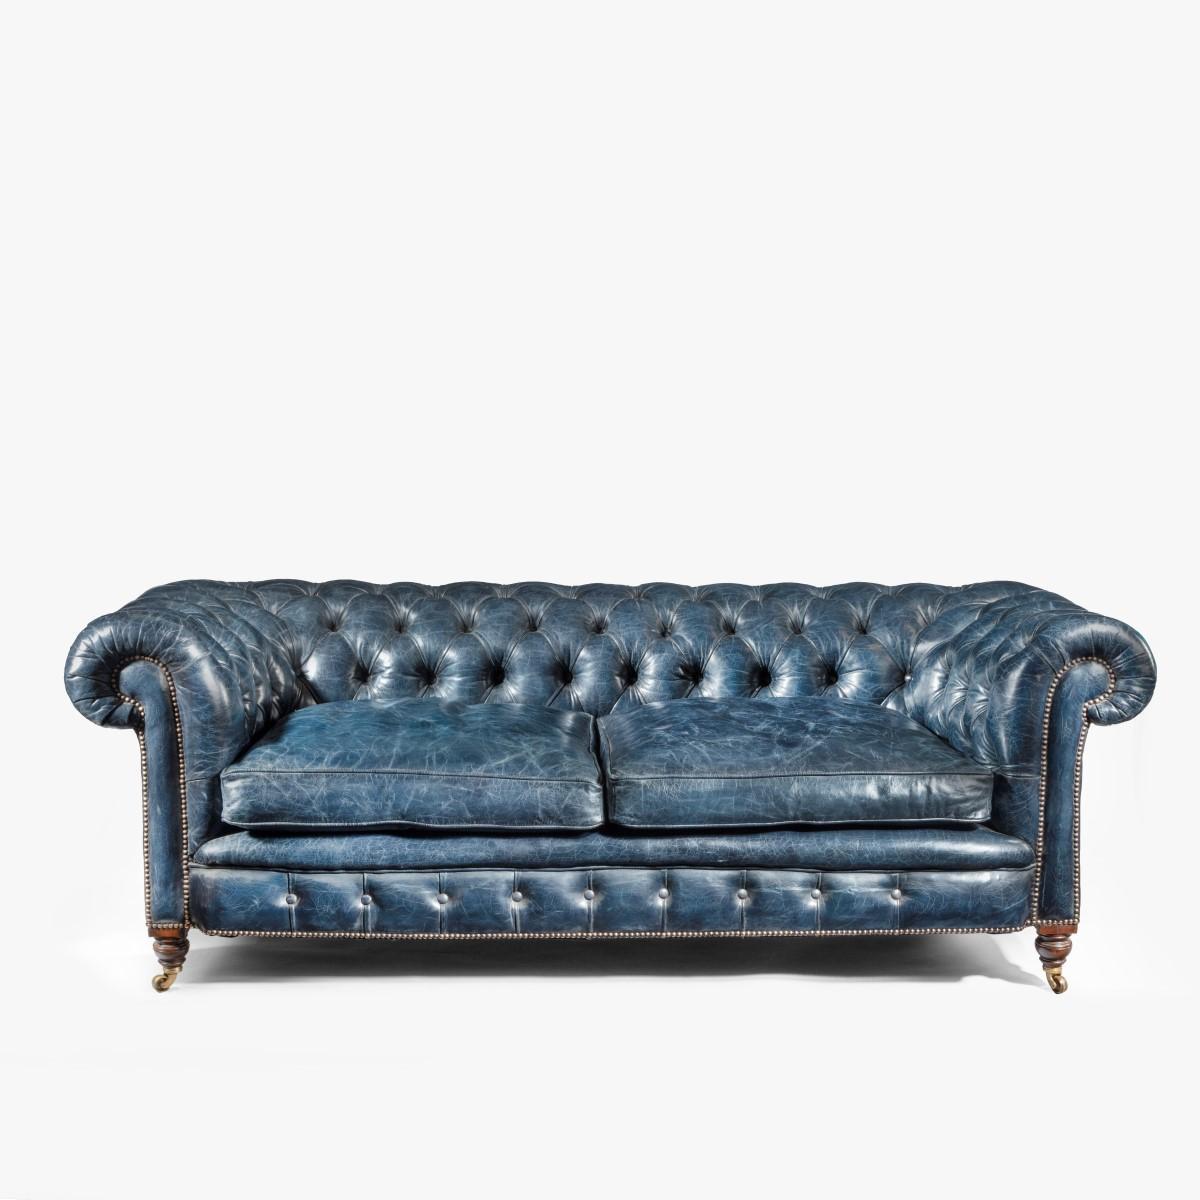 Zweisitziges viktorianisches Chesterfield-Sofa aus Leder (Walnuss)